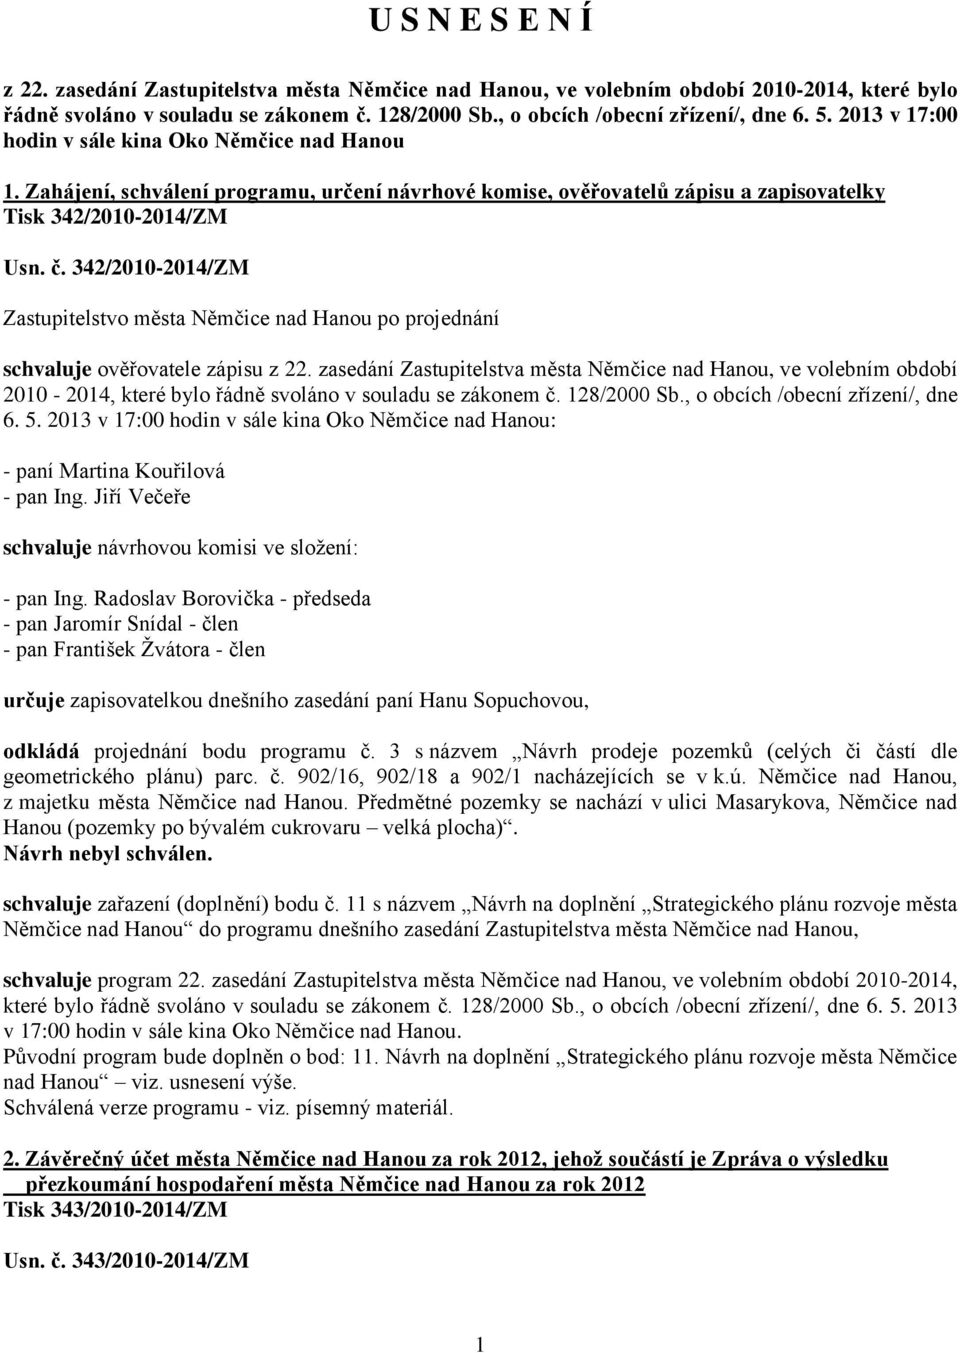 342/2010-2014/ZM schvaluje ověřovatele zápisu z 22. zasedání Zastupitelstva města Němčice nad Hanou, ve volebním období 2010-2014, které bylo řádně svoláno v souladu se zákonem č. 128/2000 Sb.